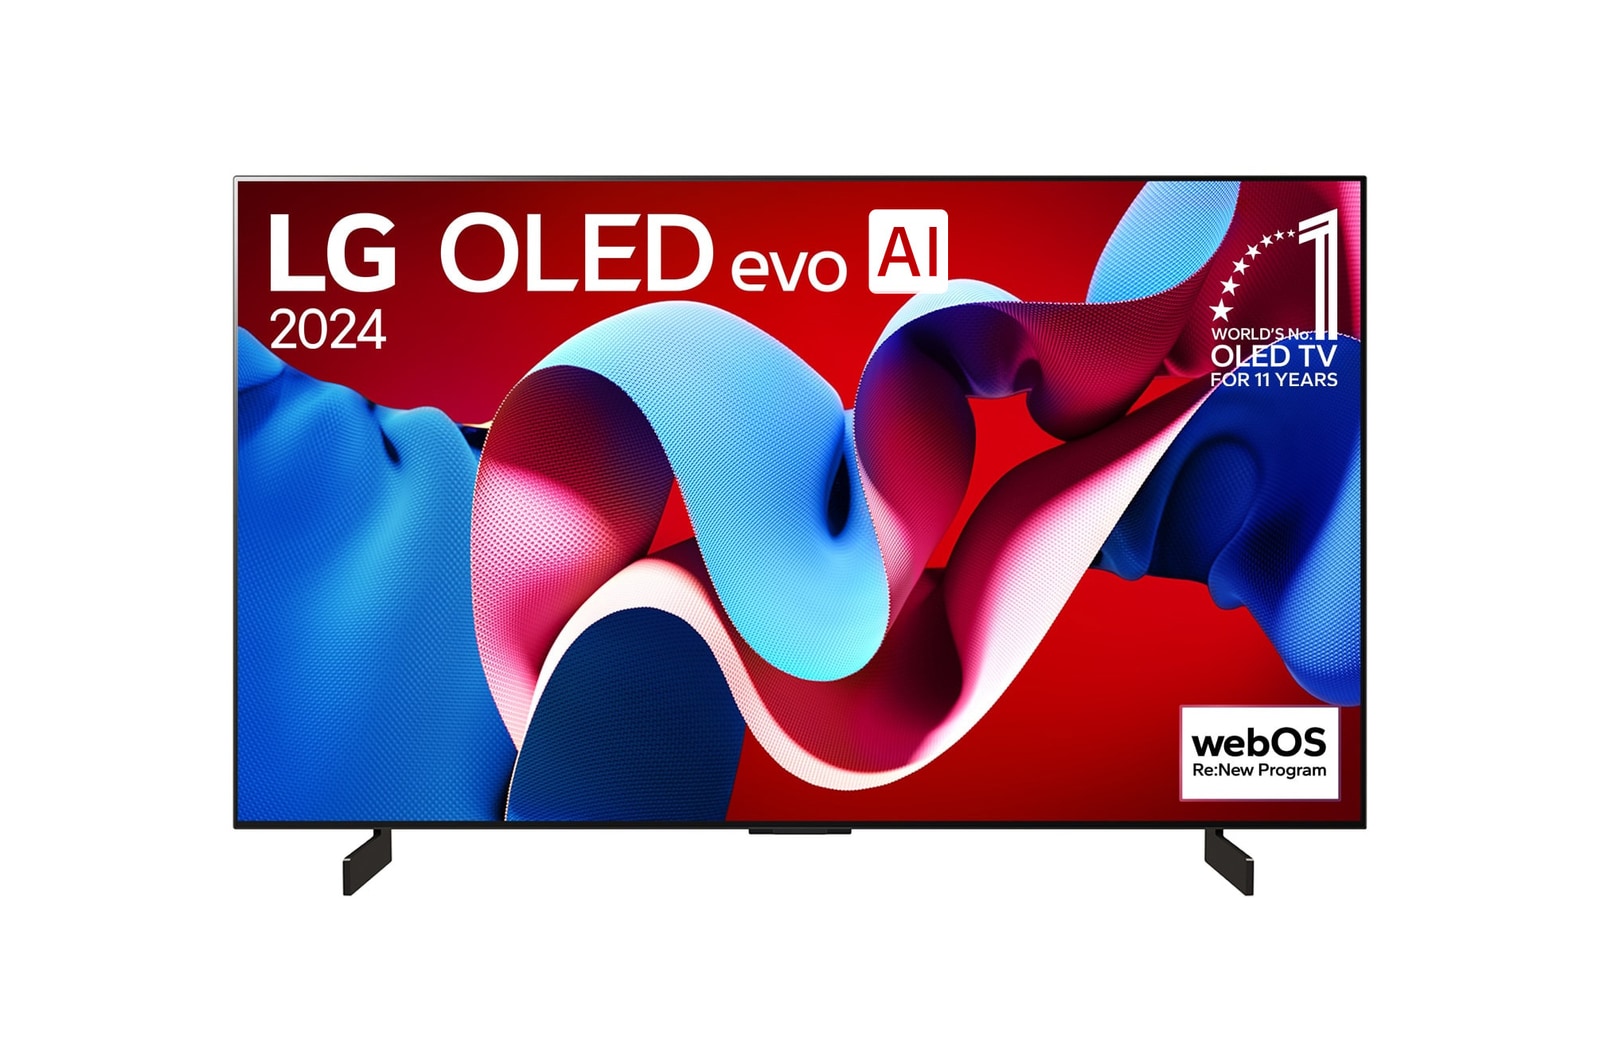 Vue de face du téléviseur LG OLED evo AI C4 avec le logo de l’emblème OLED, numéro 1 mondial depuis 11 ans et le logo du programme webOS Re:New sur l’écran